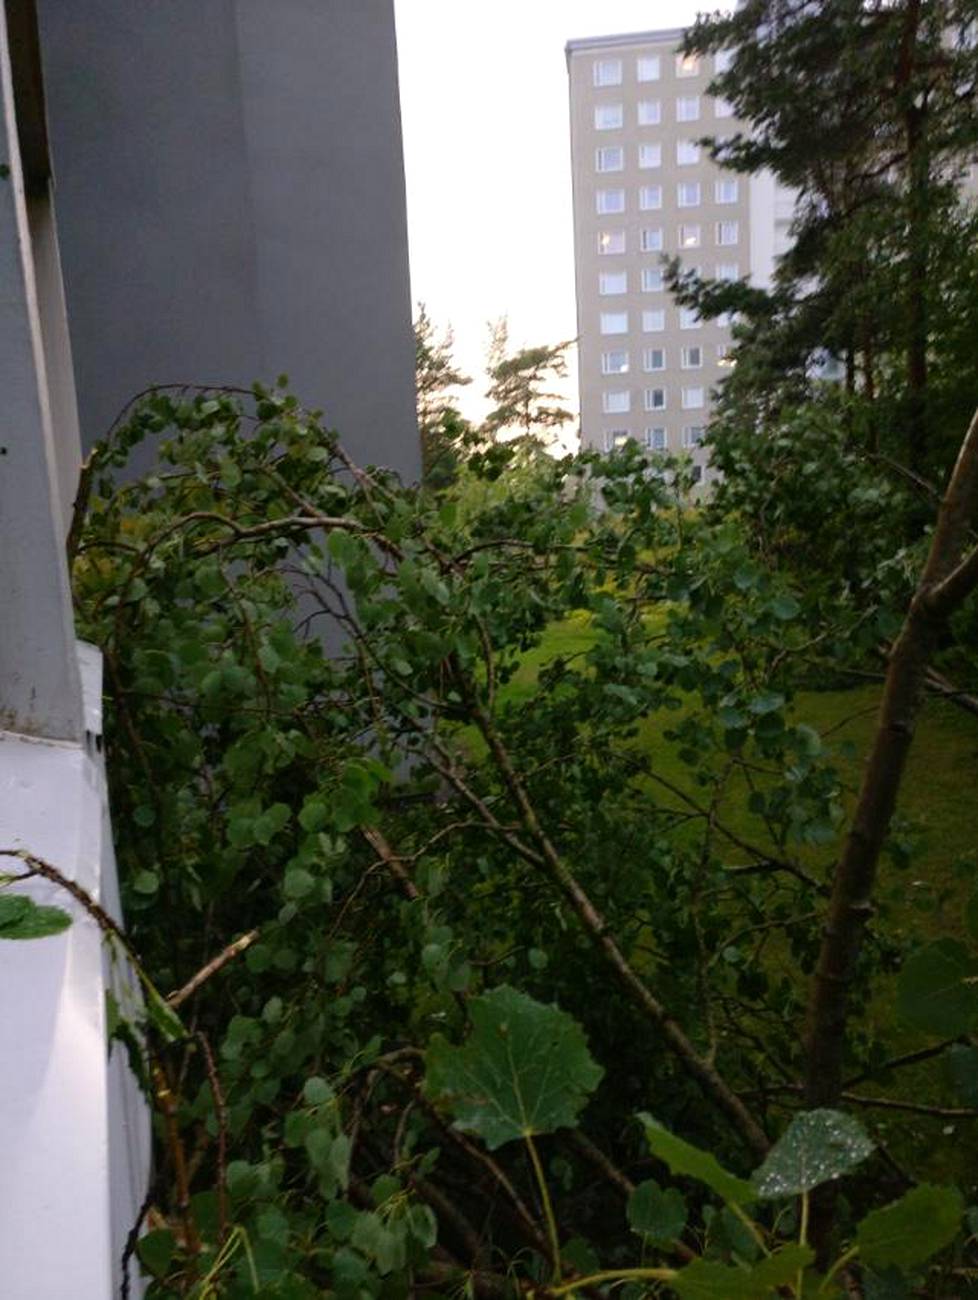 Pohjois-Haagassa sijaitsevan kerrostalon parveketta vasten kaatui puu hajottaen yhden parvekelasin.